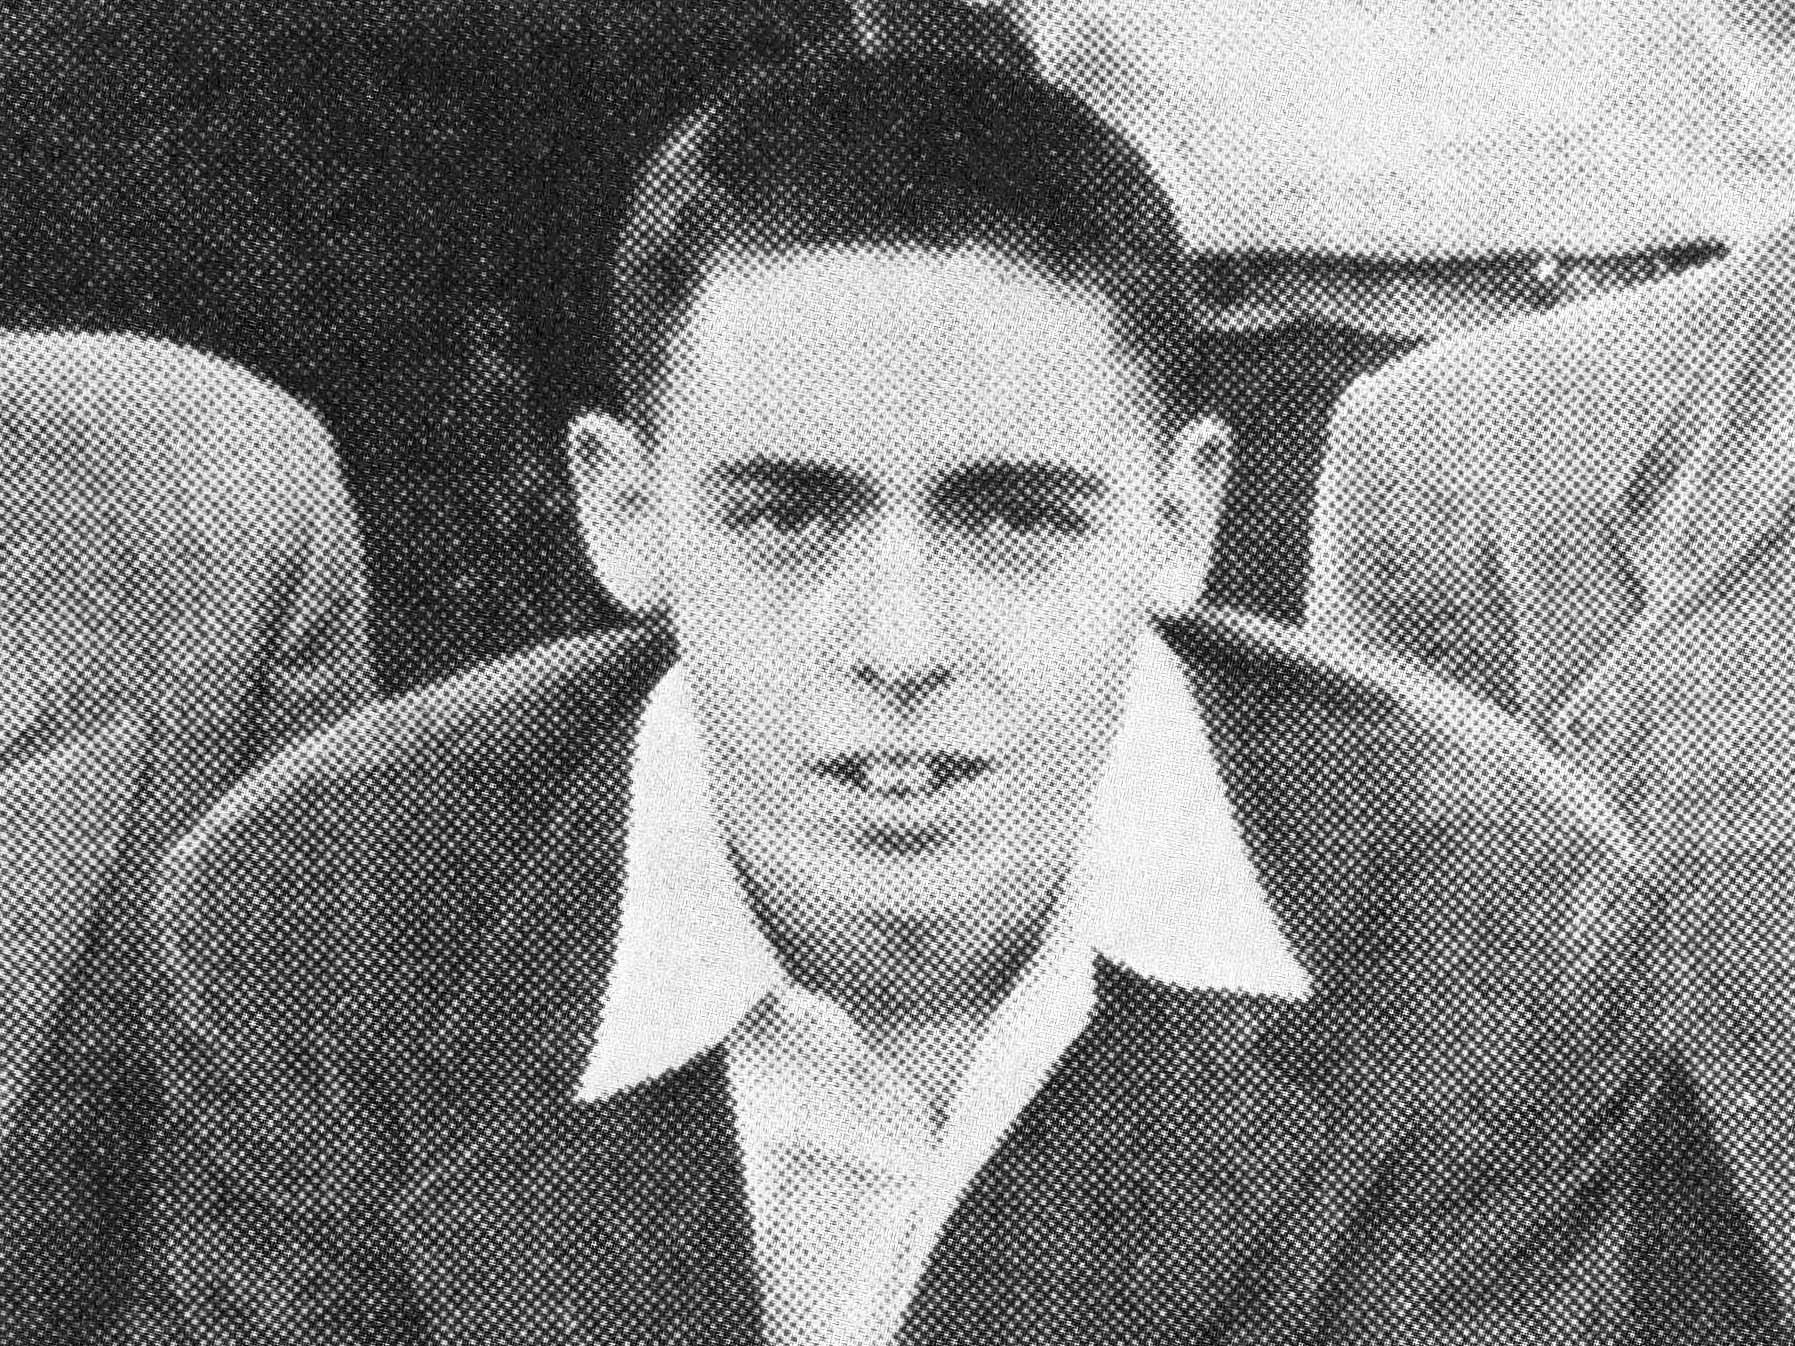 Pynchon in high school, 1953